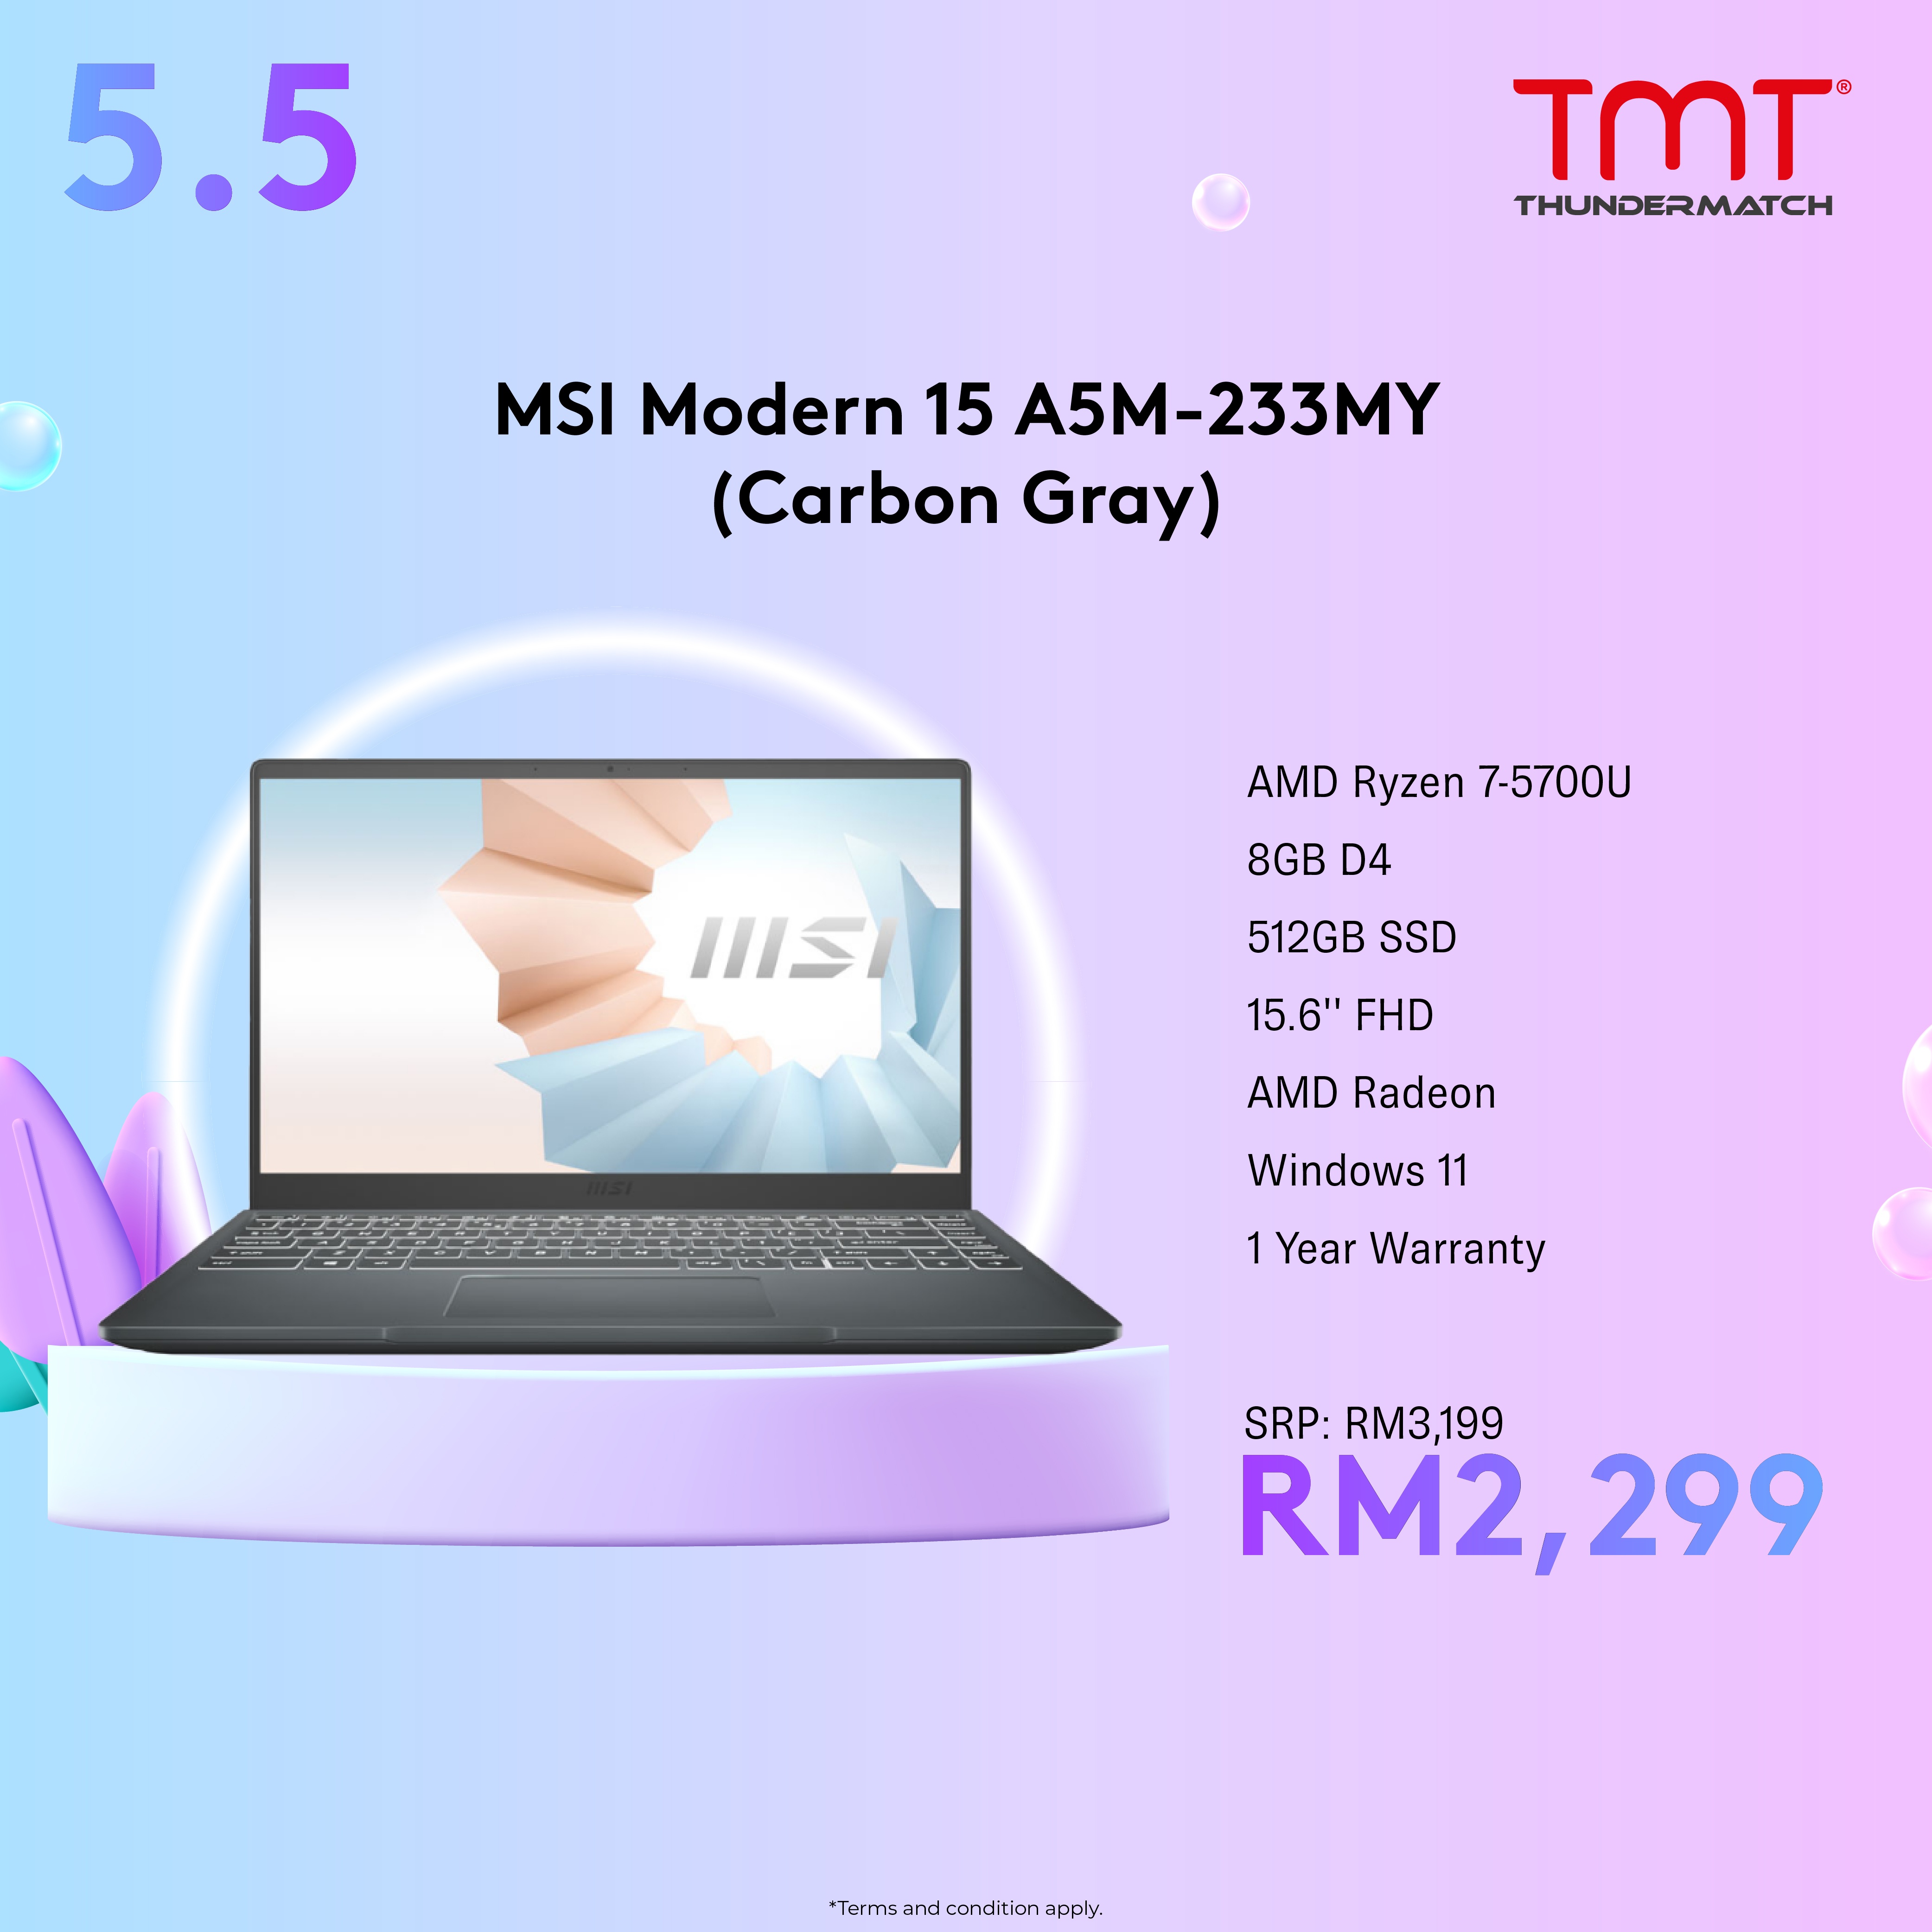 MSI Modern 15 A5M-233MY Laptop | AMD Ryzen 7 5700U | 8GB Ram/512GB SSD | 15.6' 'FHD/AMD Radeon Graphics | W11 | 1-Y Warranty